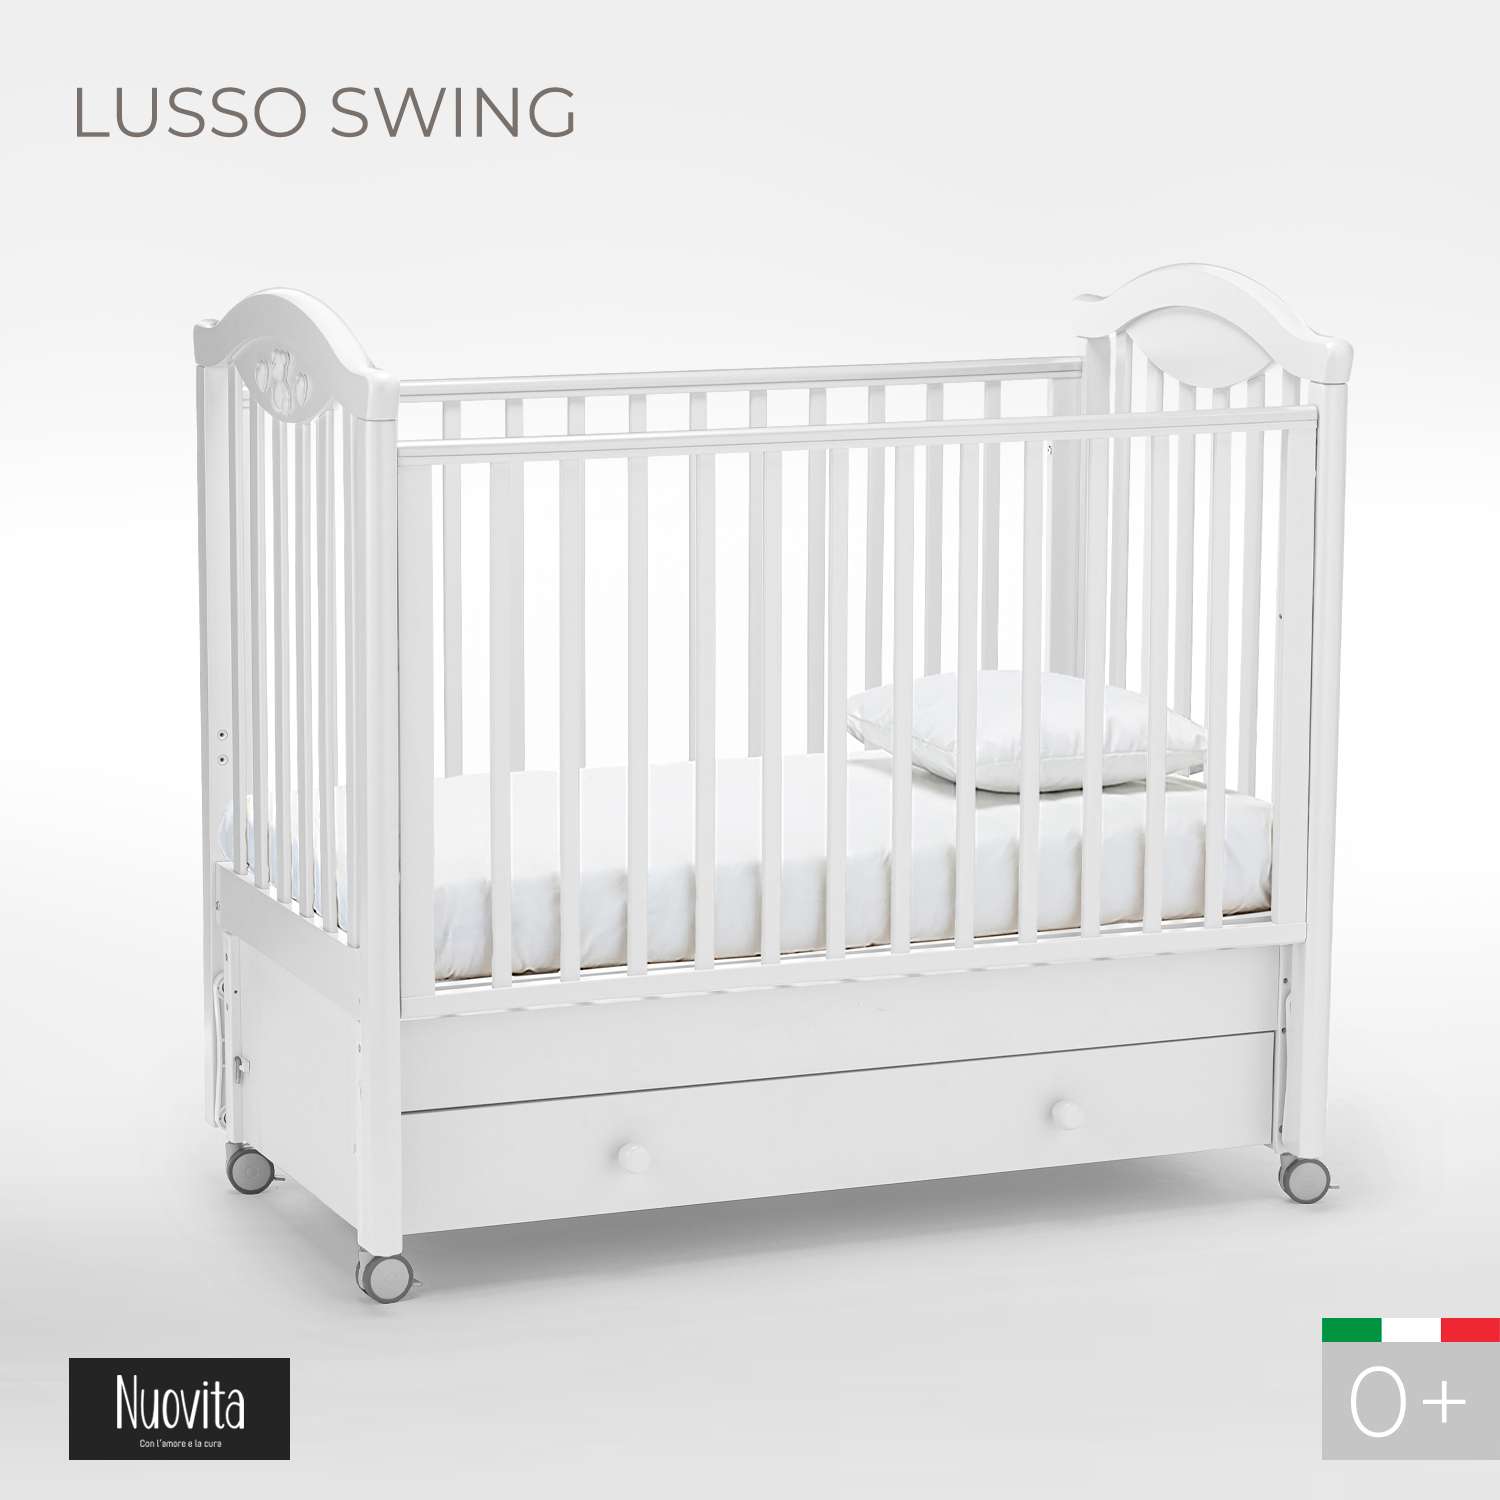 Кровать Nuovita Lusso Swing с продольным маятником Bianco/Белый - фото 2